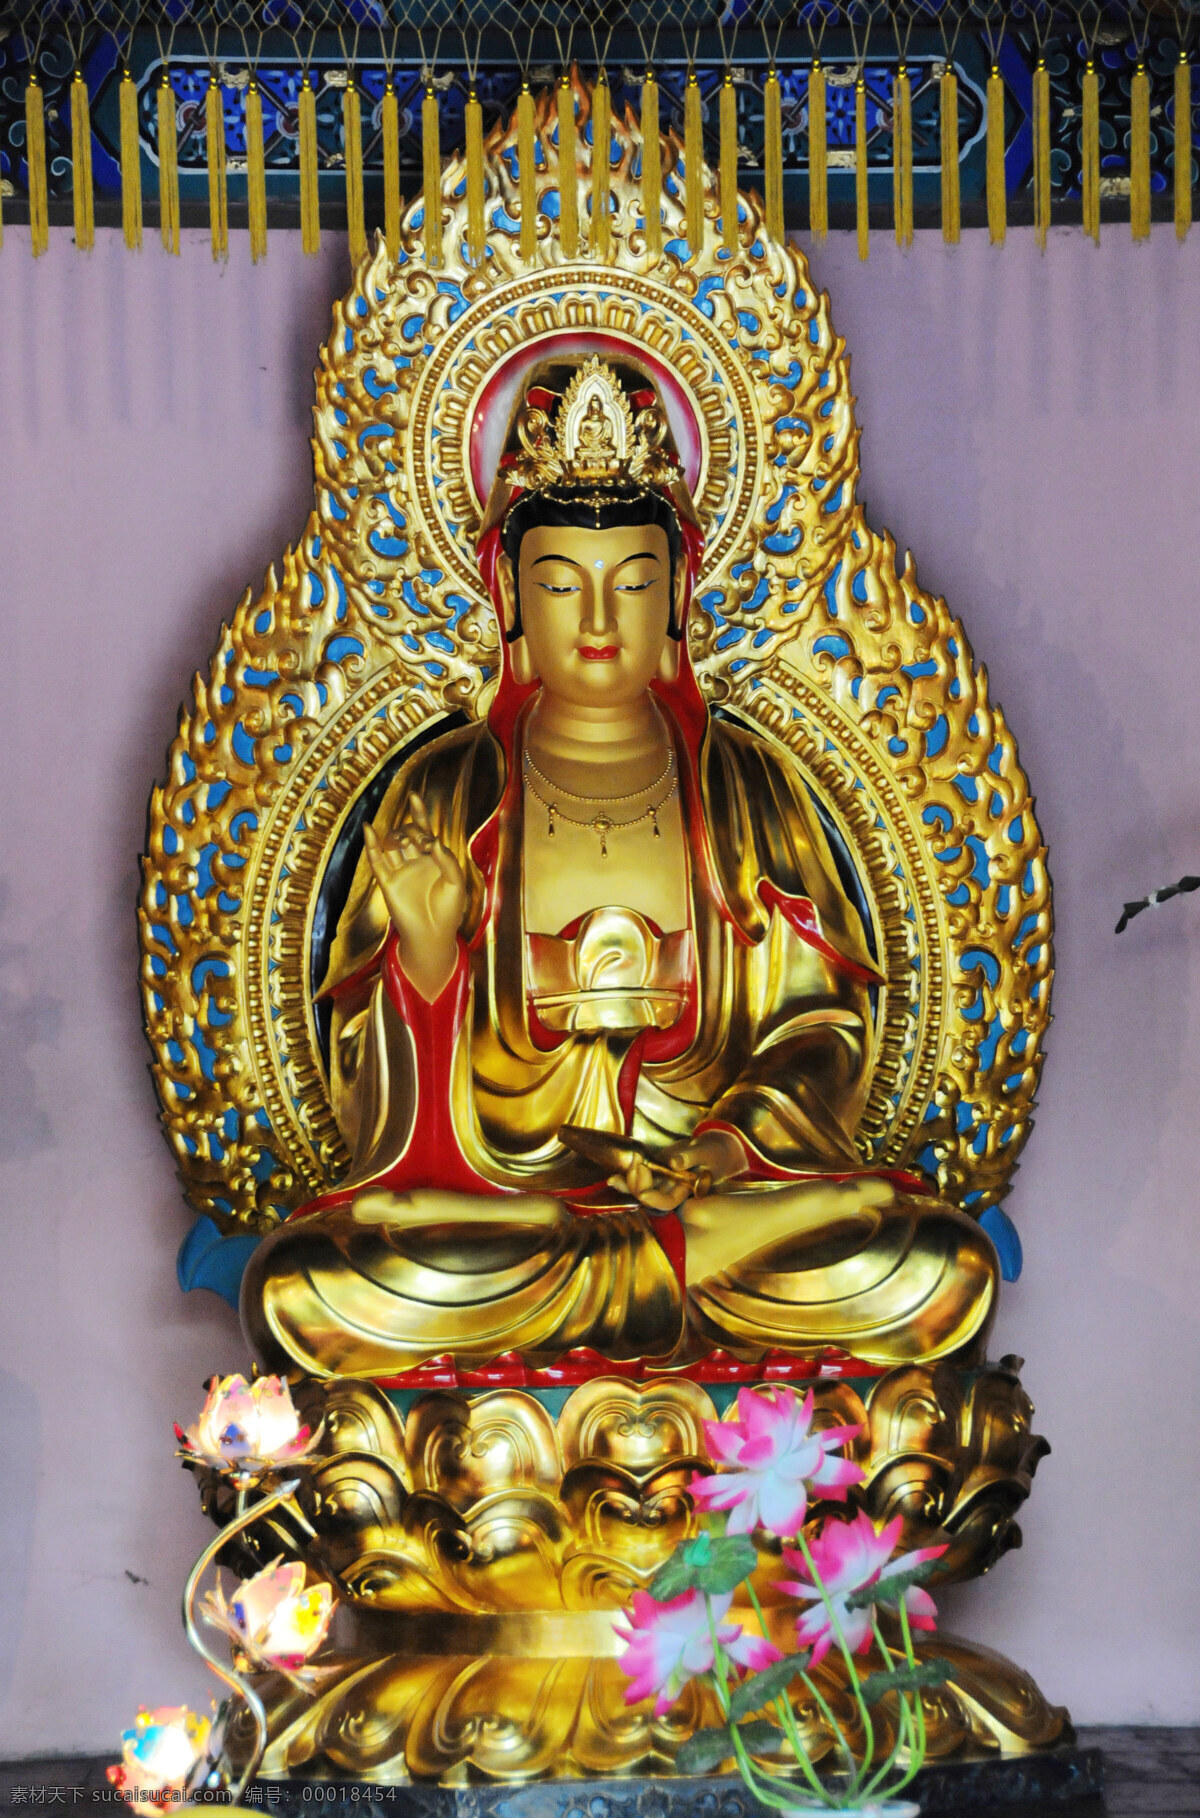 菩萨像 明 西藏 佛像 镀金 弥勒 菩萨 文物 收藏 首都 博物馆 造像艺术 雕塑 建筑园林